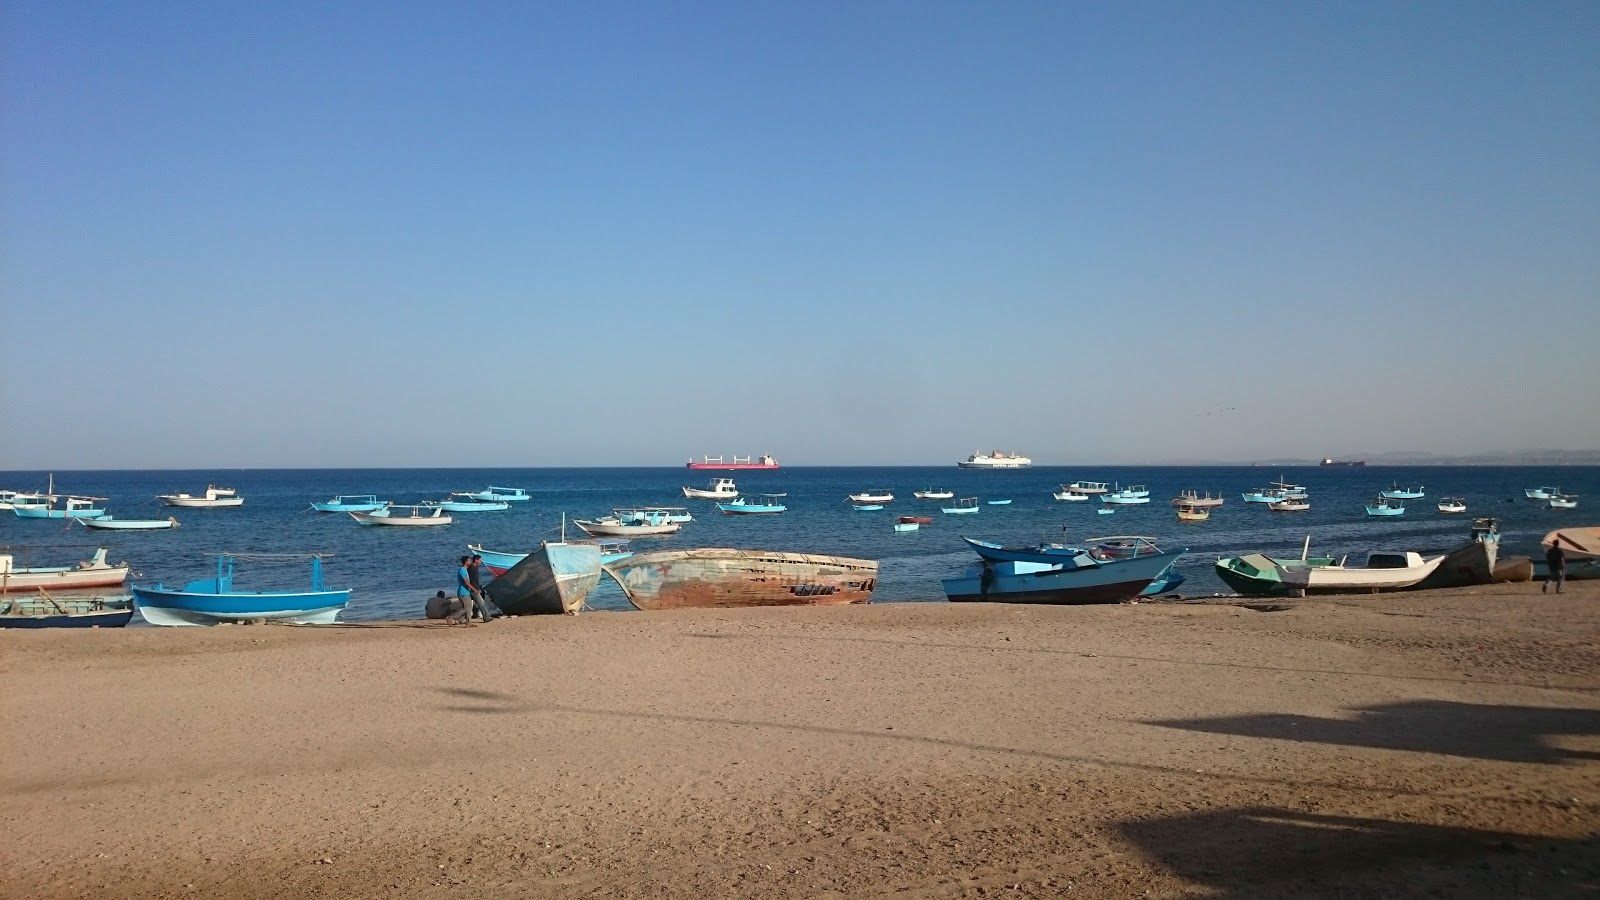 Safaga City public beach'in fotoğrafı parlak kum yüzey ile